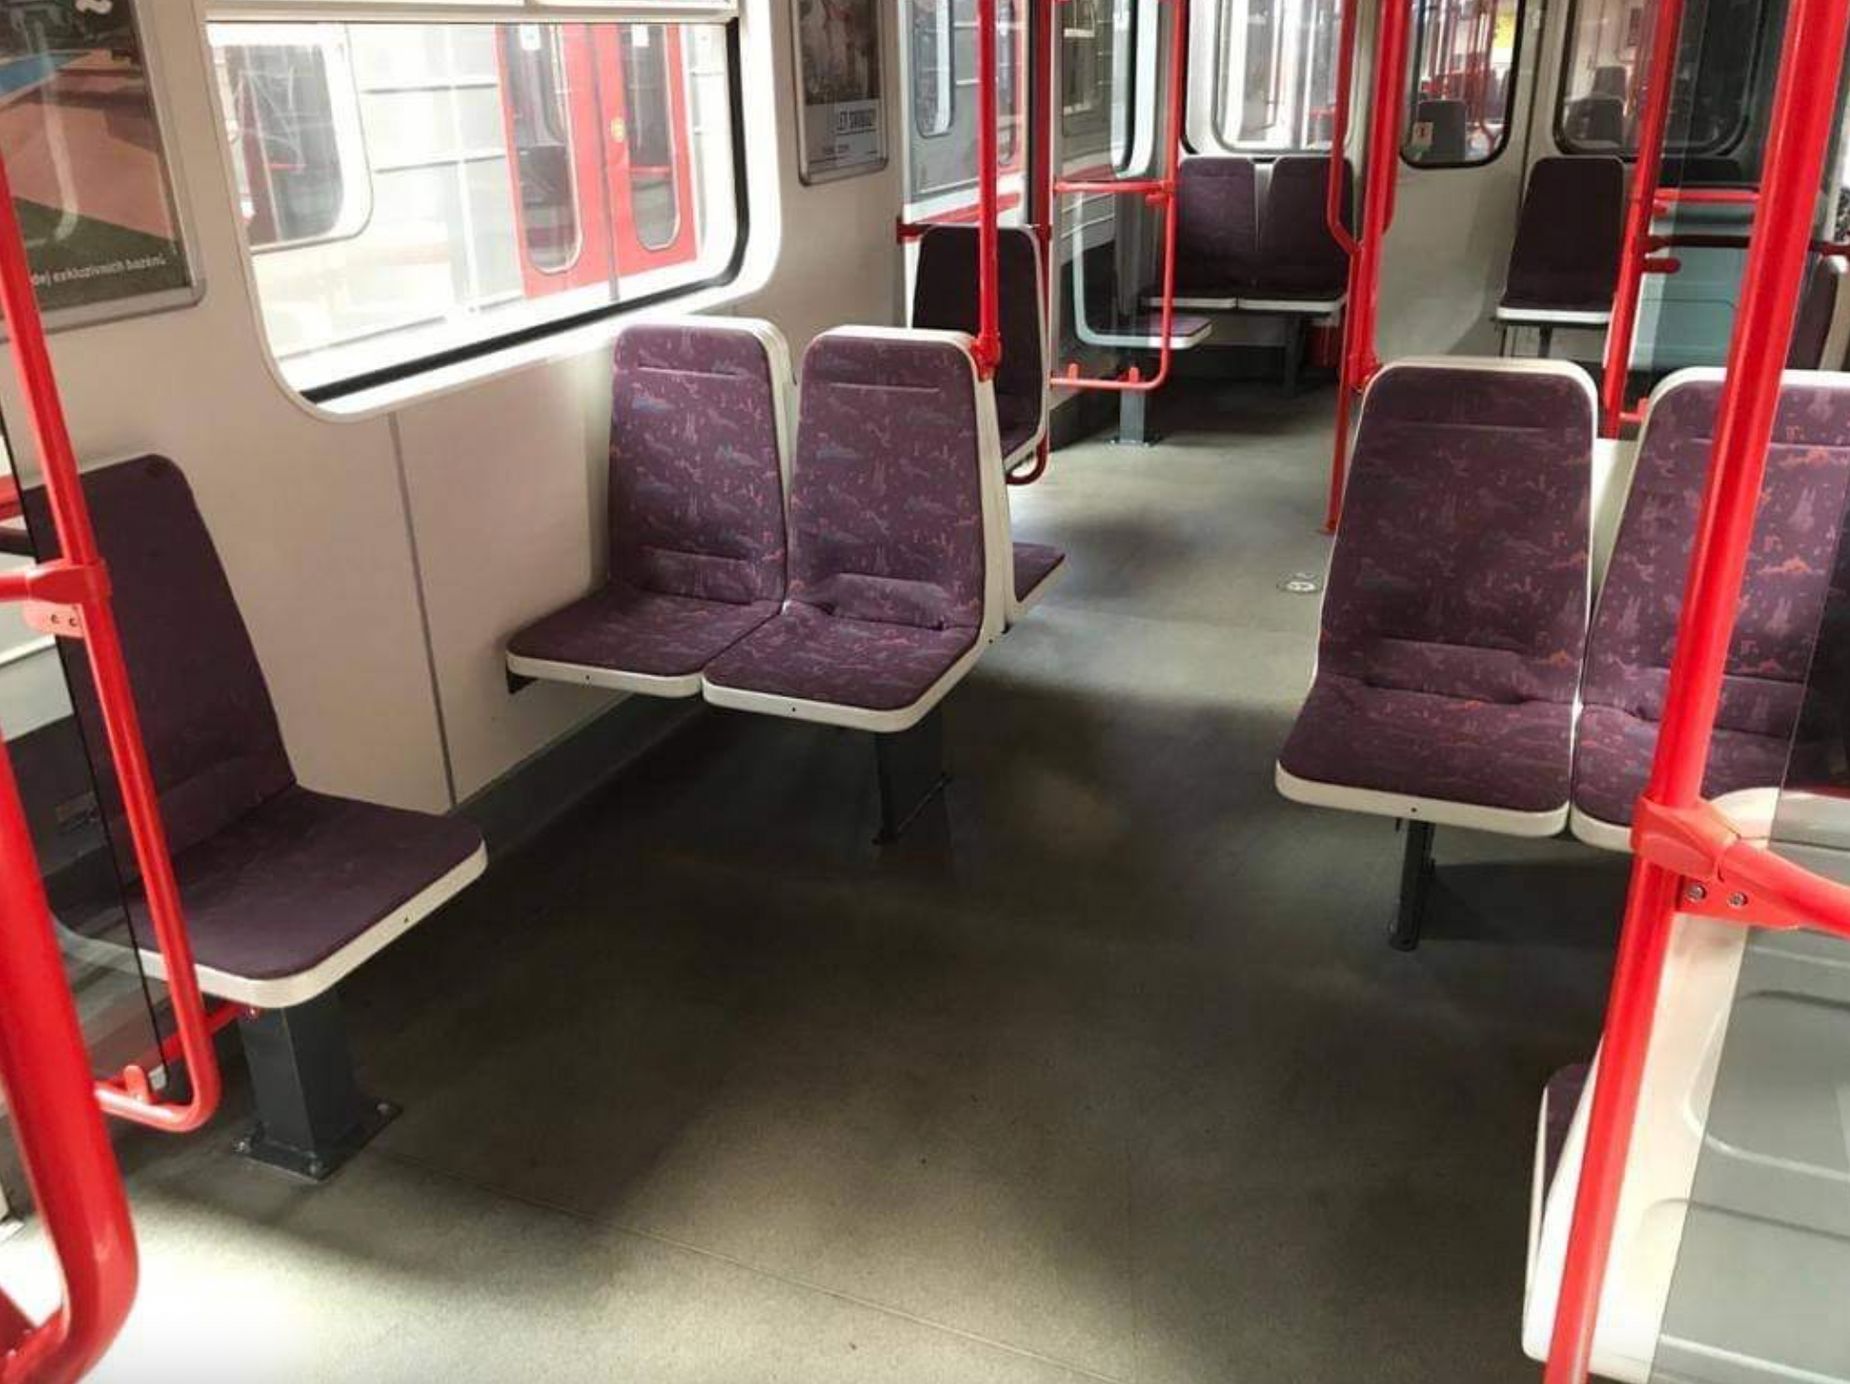 Metro-sedačka otočená o 90 stupňů